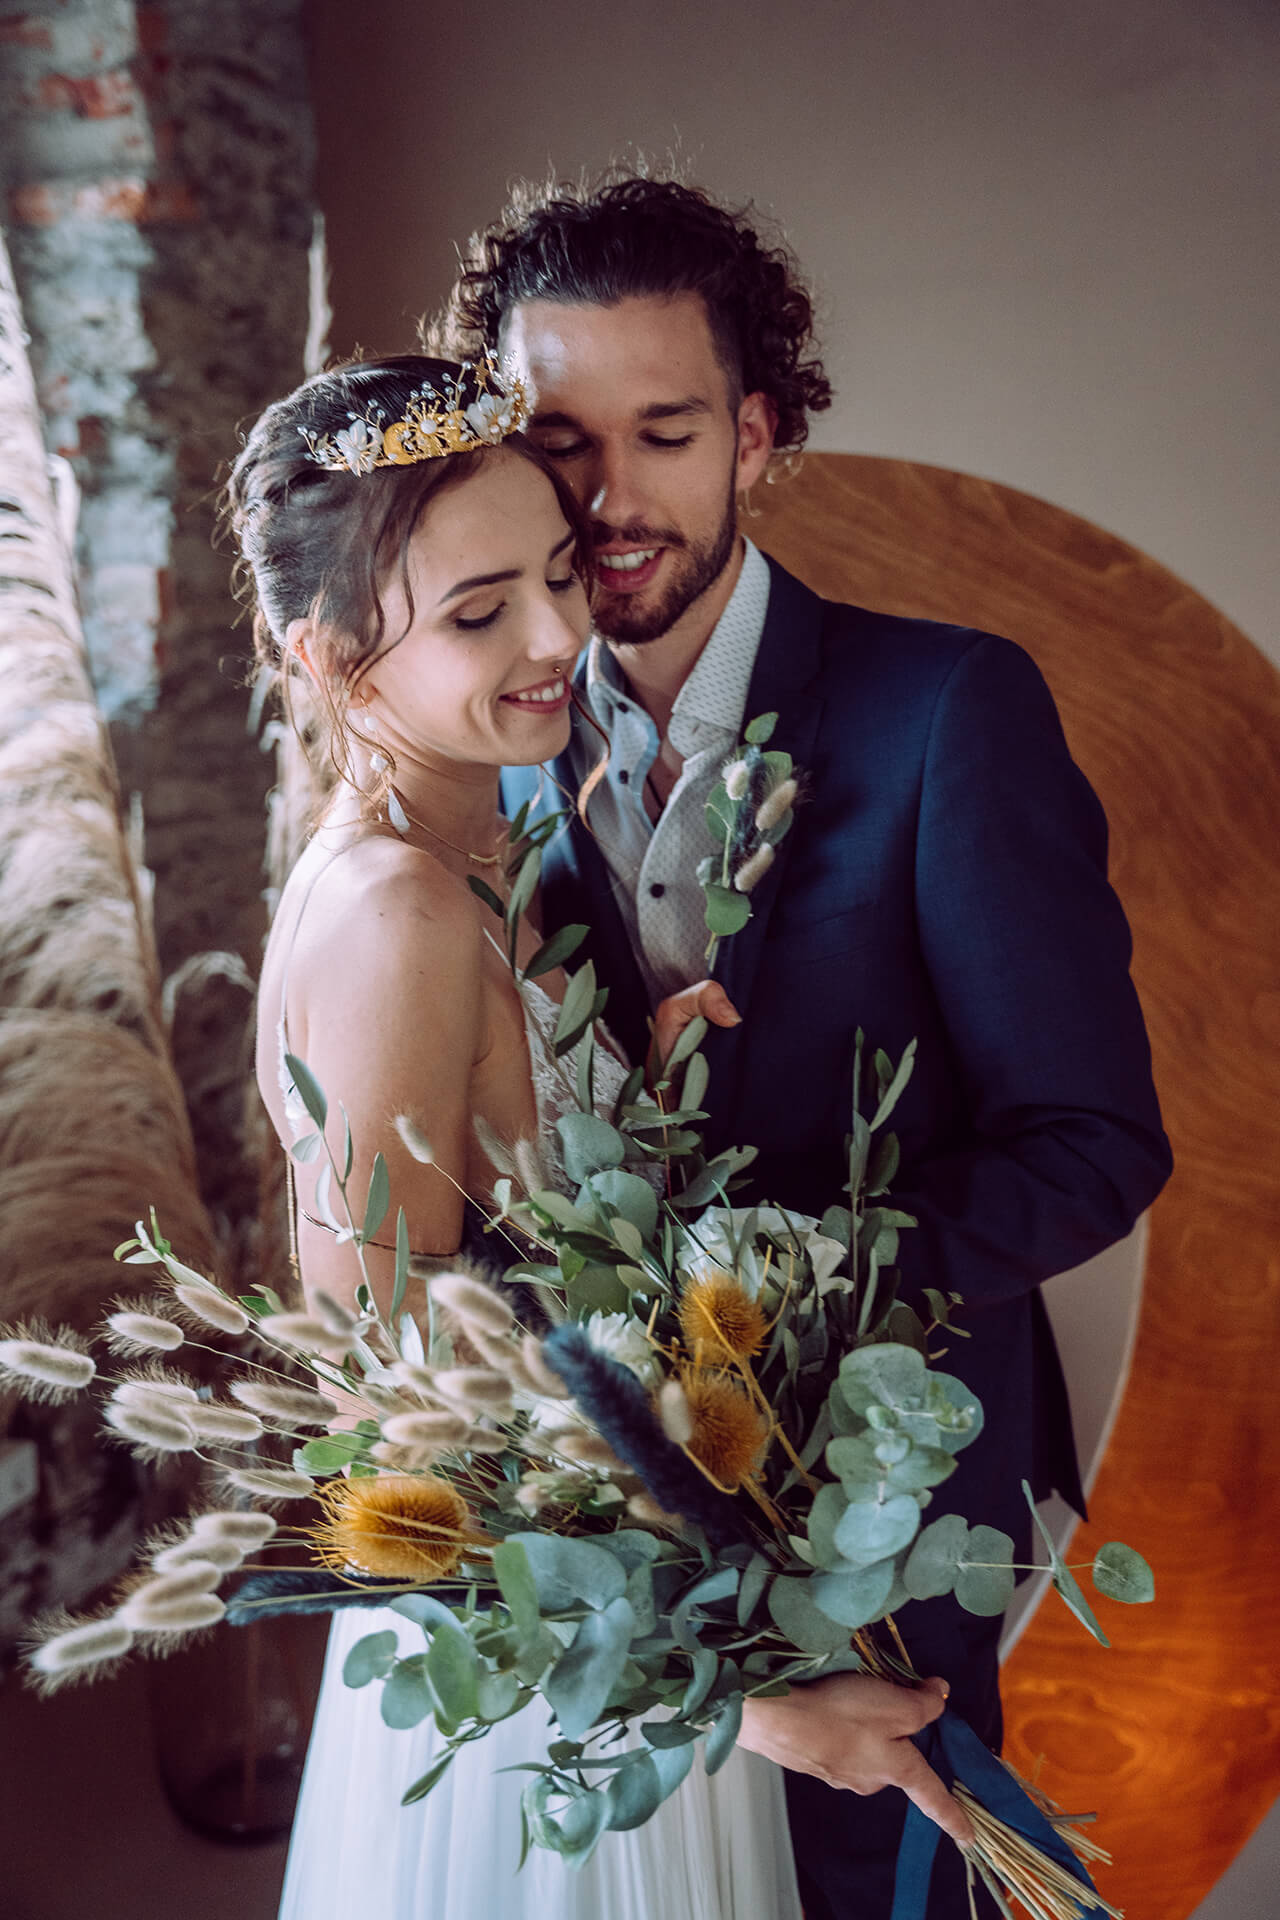 Hochzeitsworkshop Stars & Glitter - Brautpaar Fotoshooting - Brautstrauß